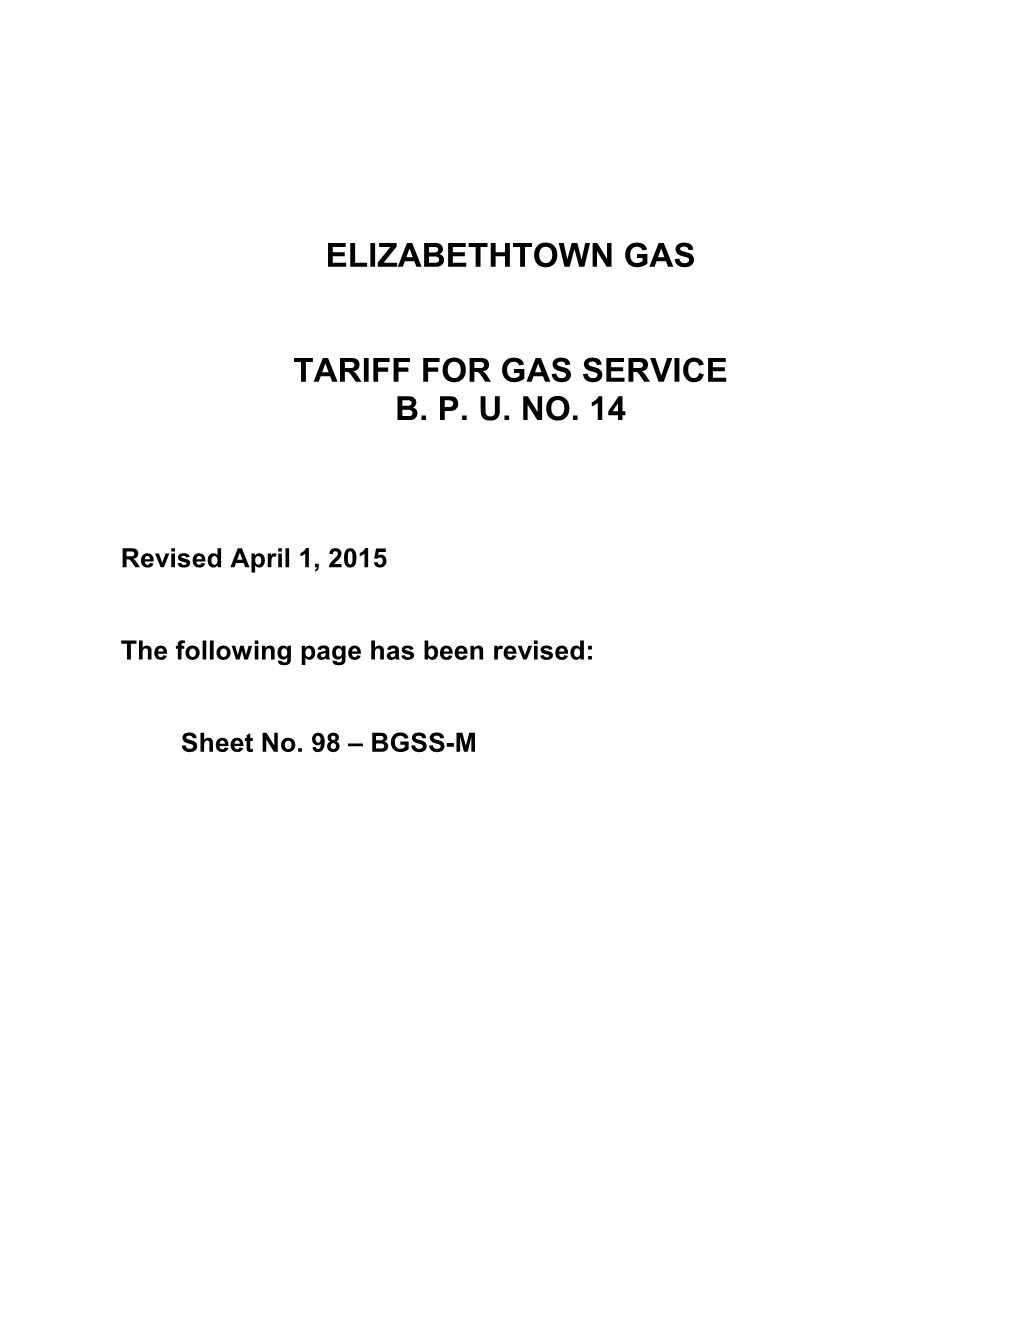 Elizabethtown Gas Company